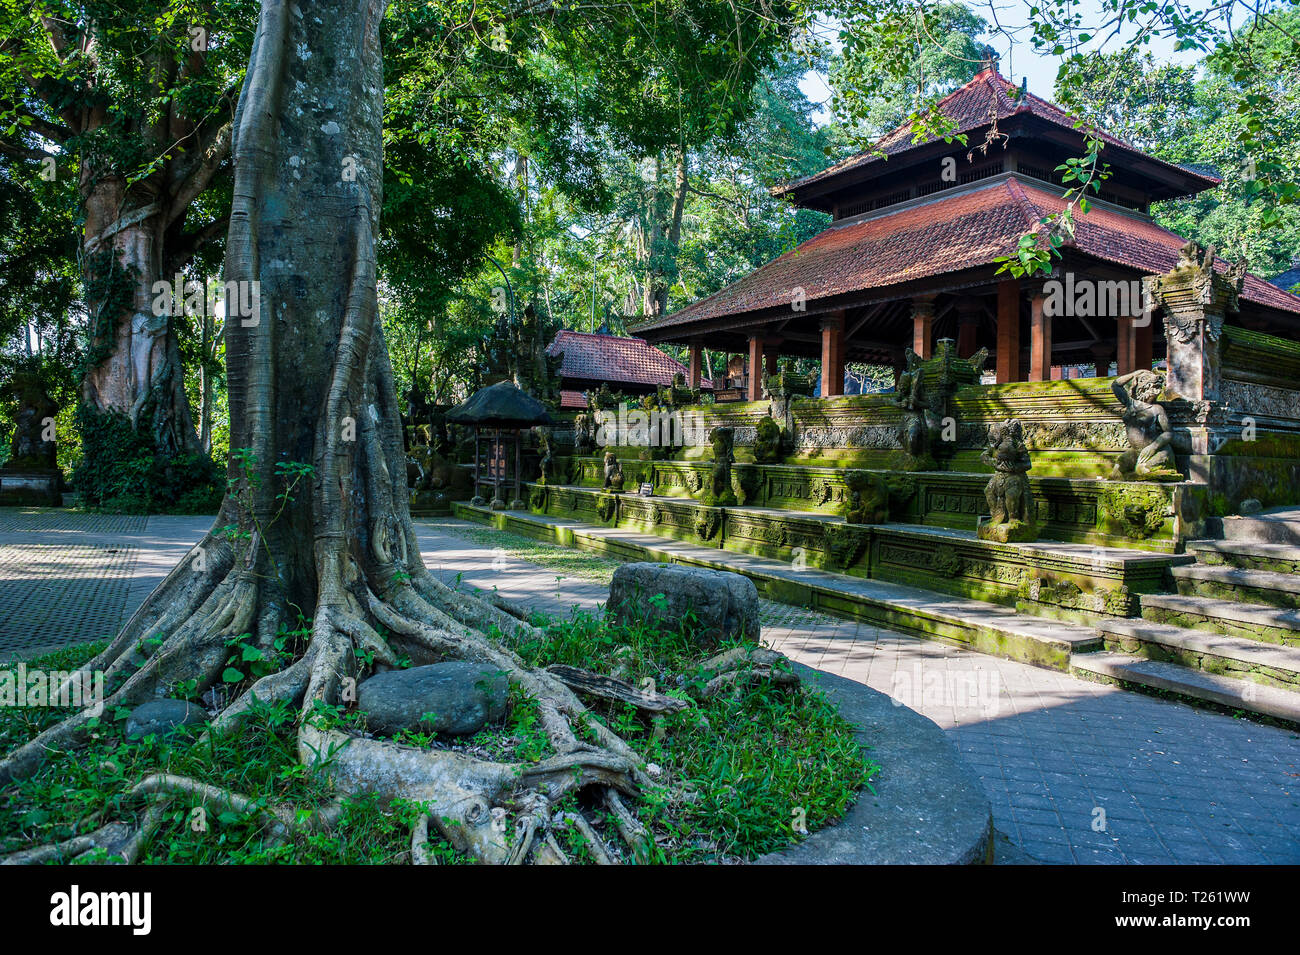 Indonesia, Bali, Ubud Monkey Forest, Hindu temple Stock Photo